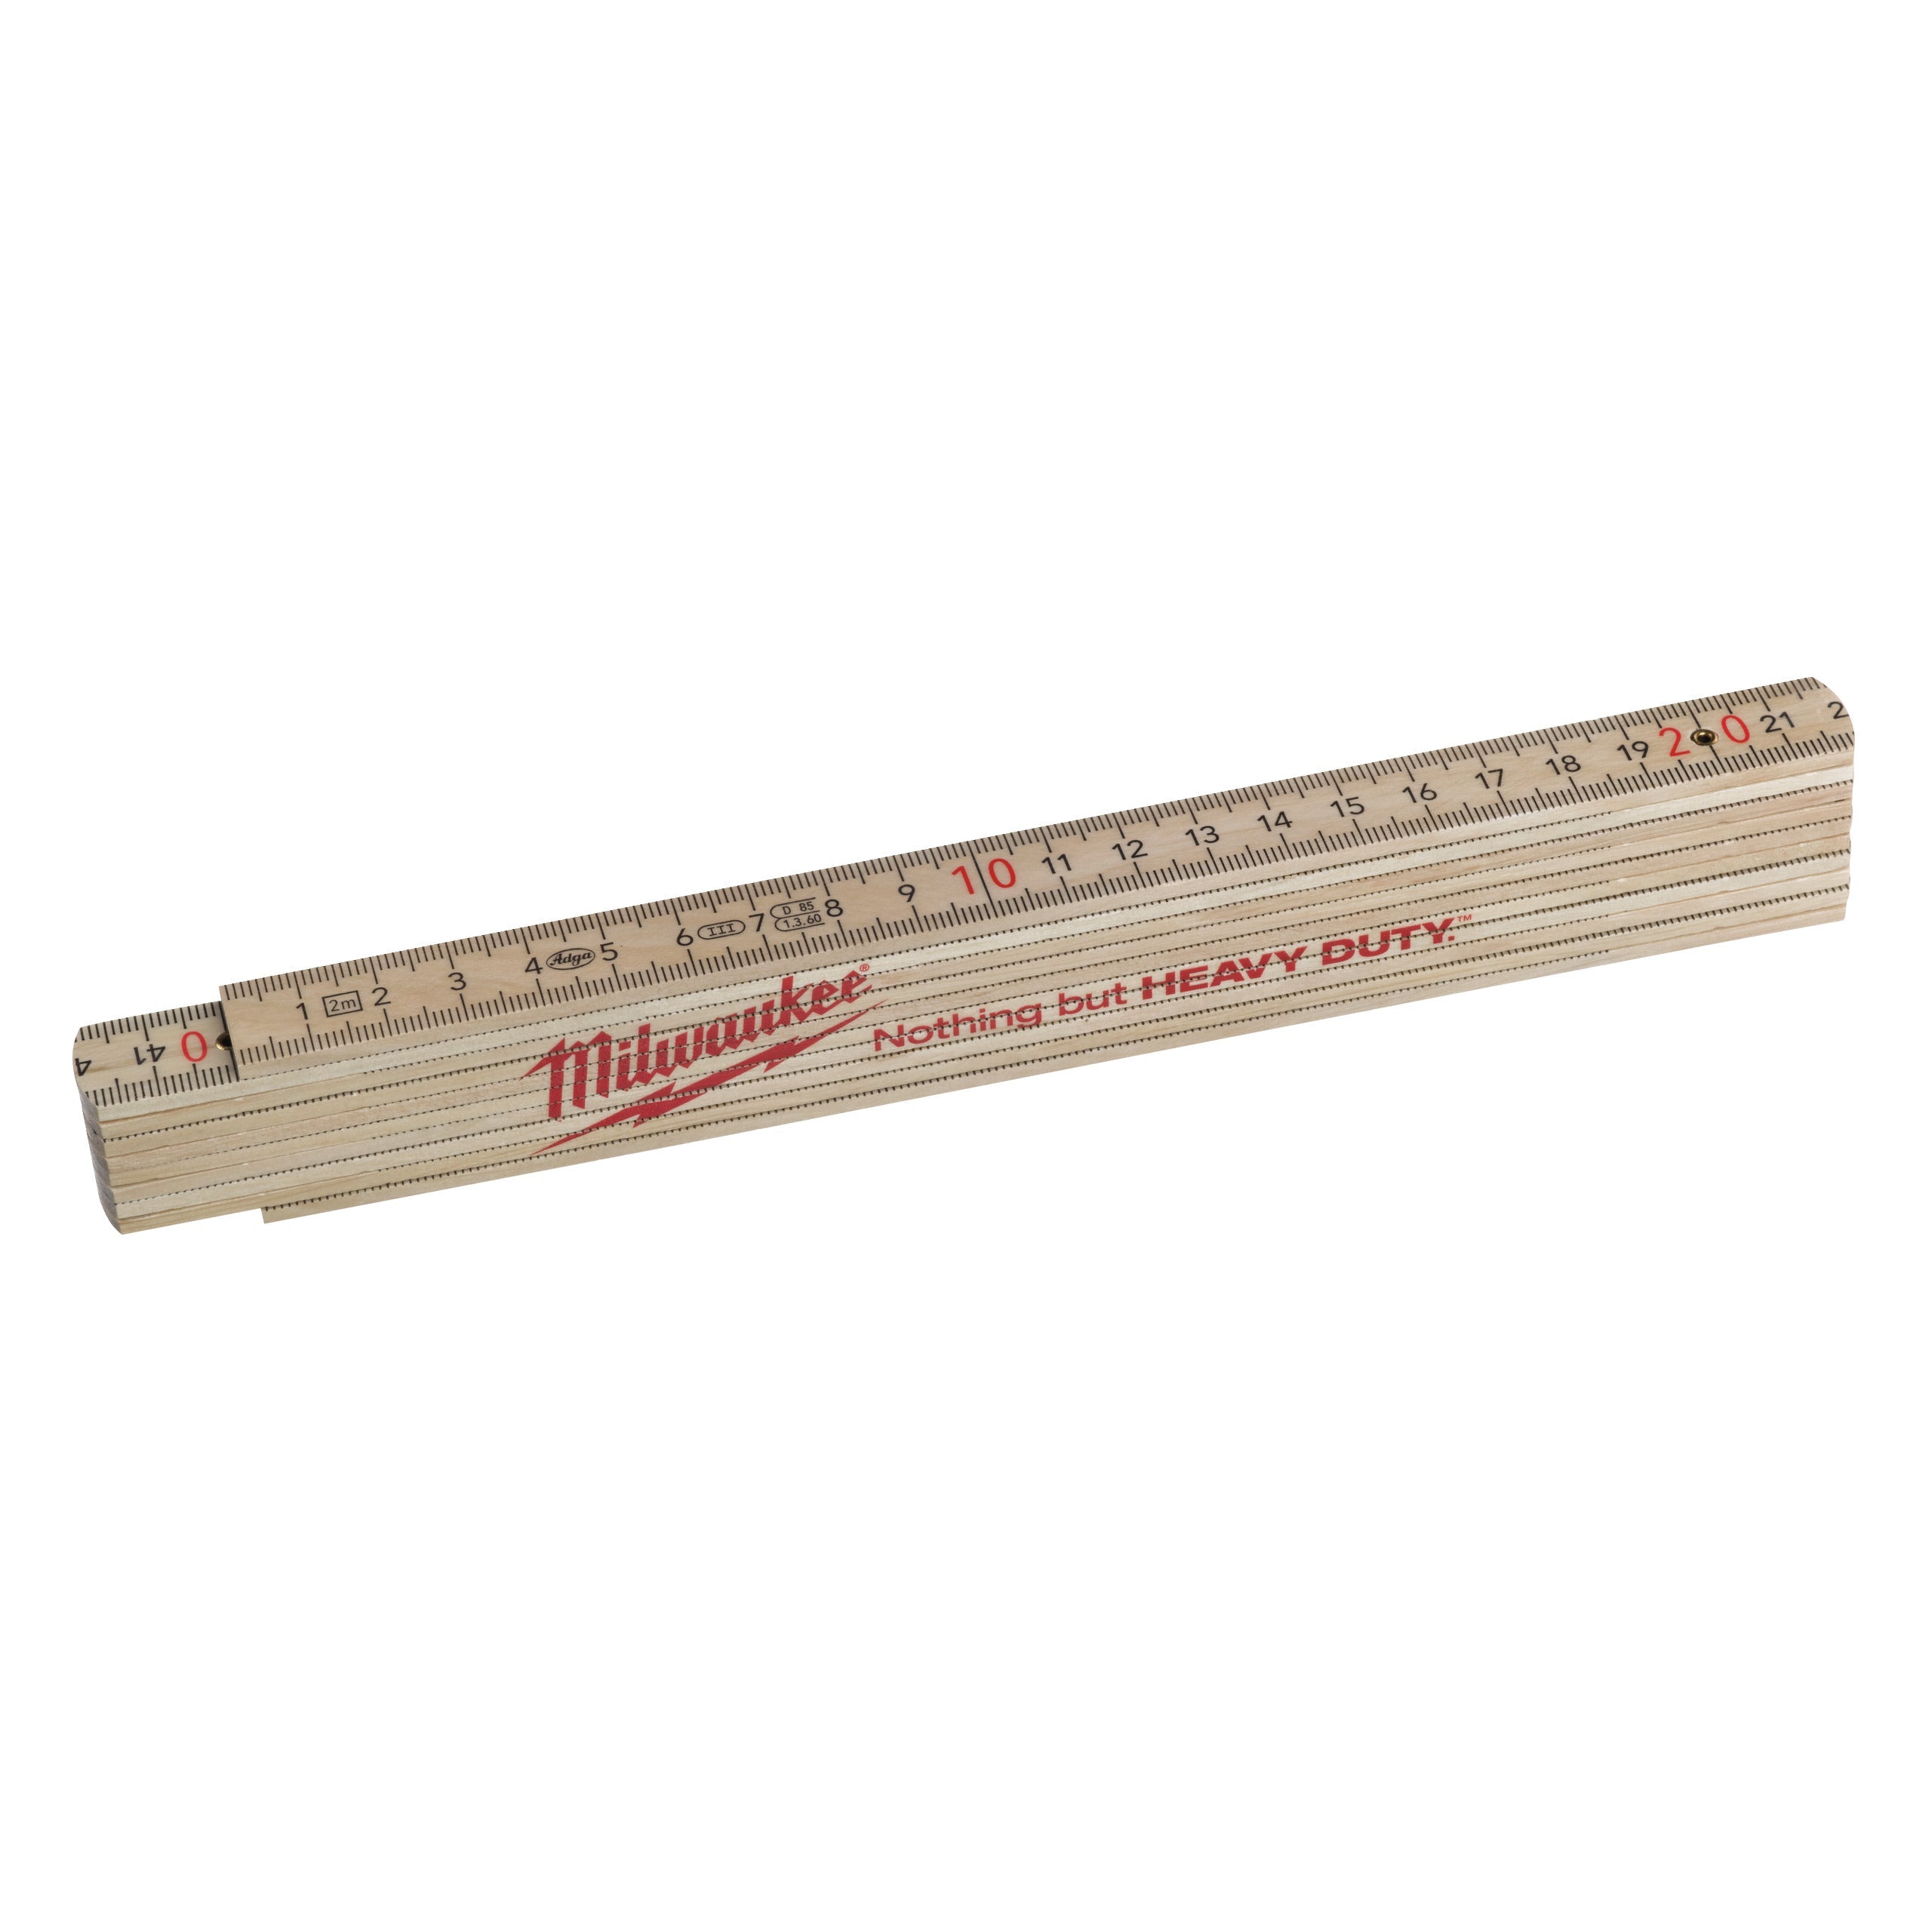 Metru de tâmplărie din lemn Milwaukee, îngust - 2m, cod 4932459303